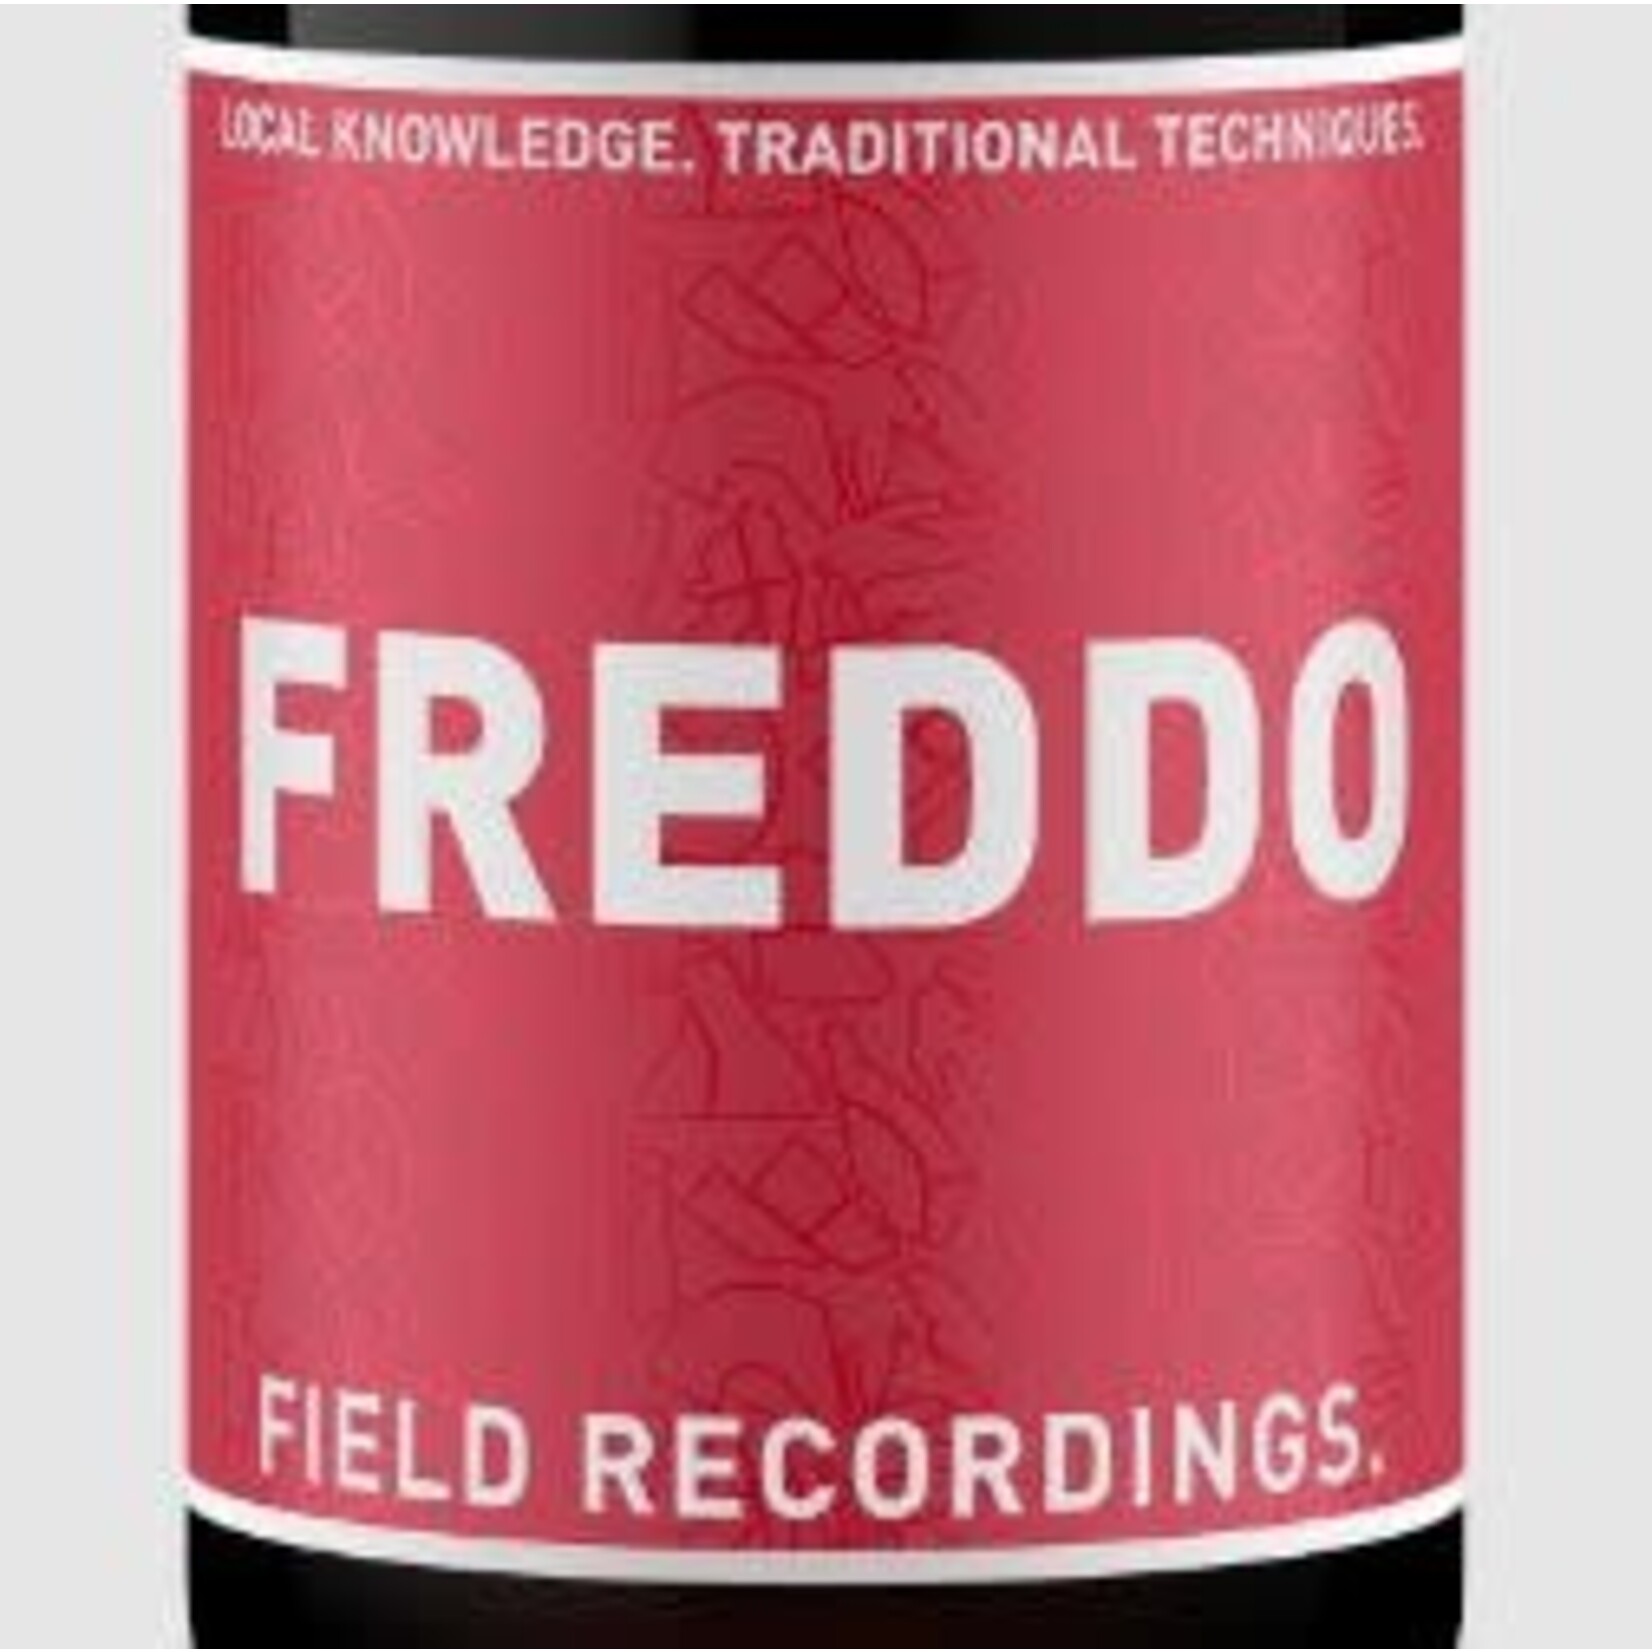 Field Recordings Field Recordings FREDDO Sangiovese (Red Label) ORGANIC 2022 Paso Robles California